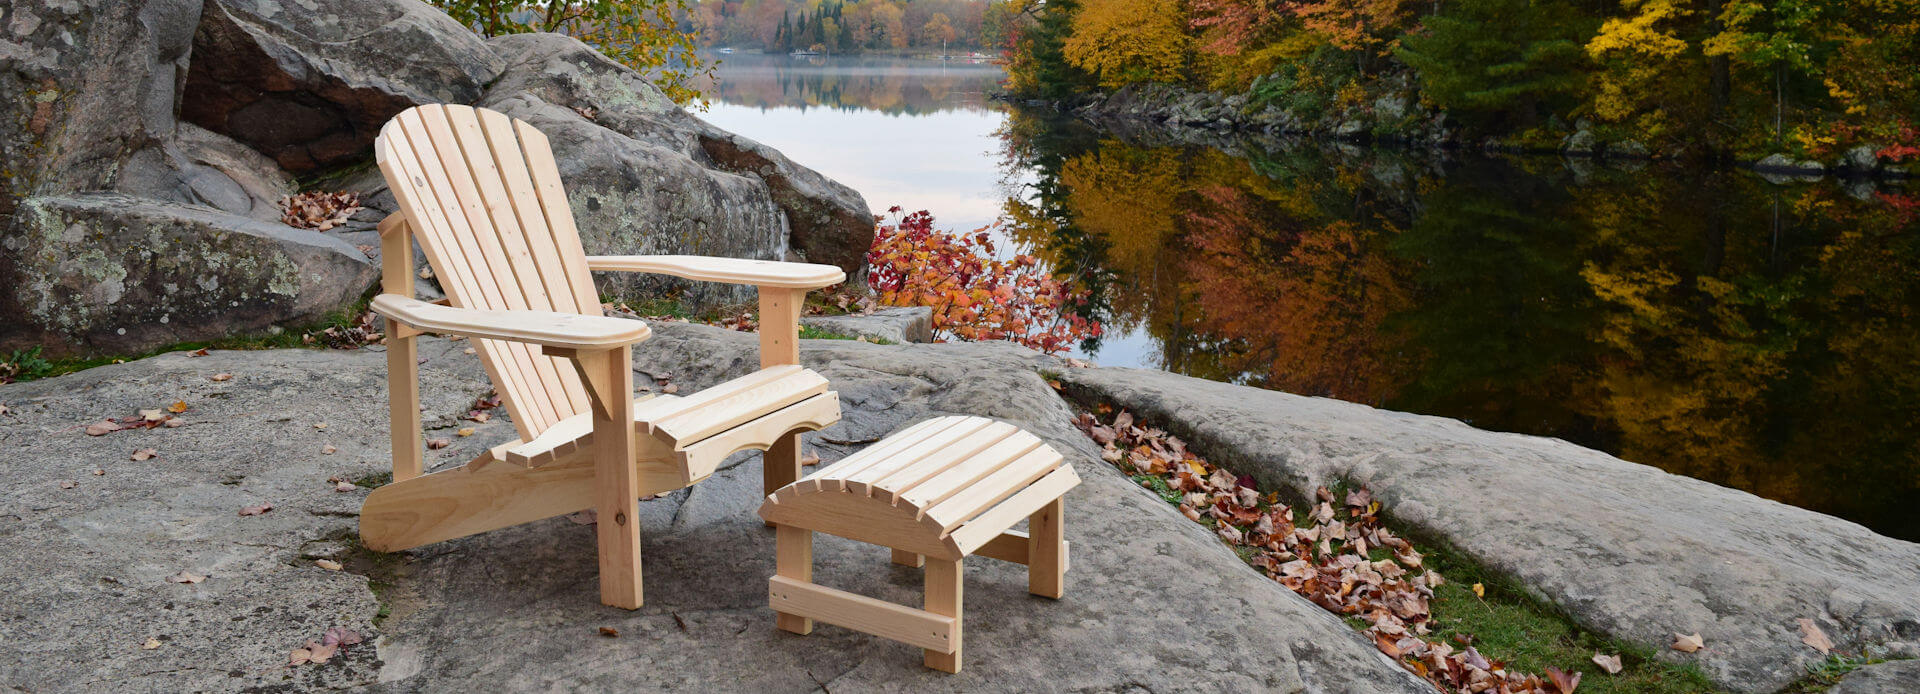 muskoka outdoor furniture